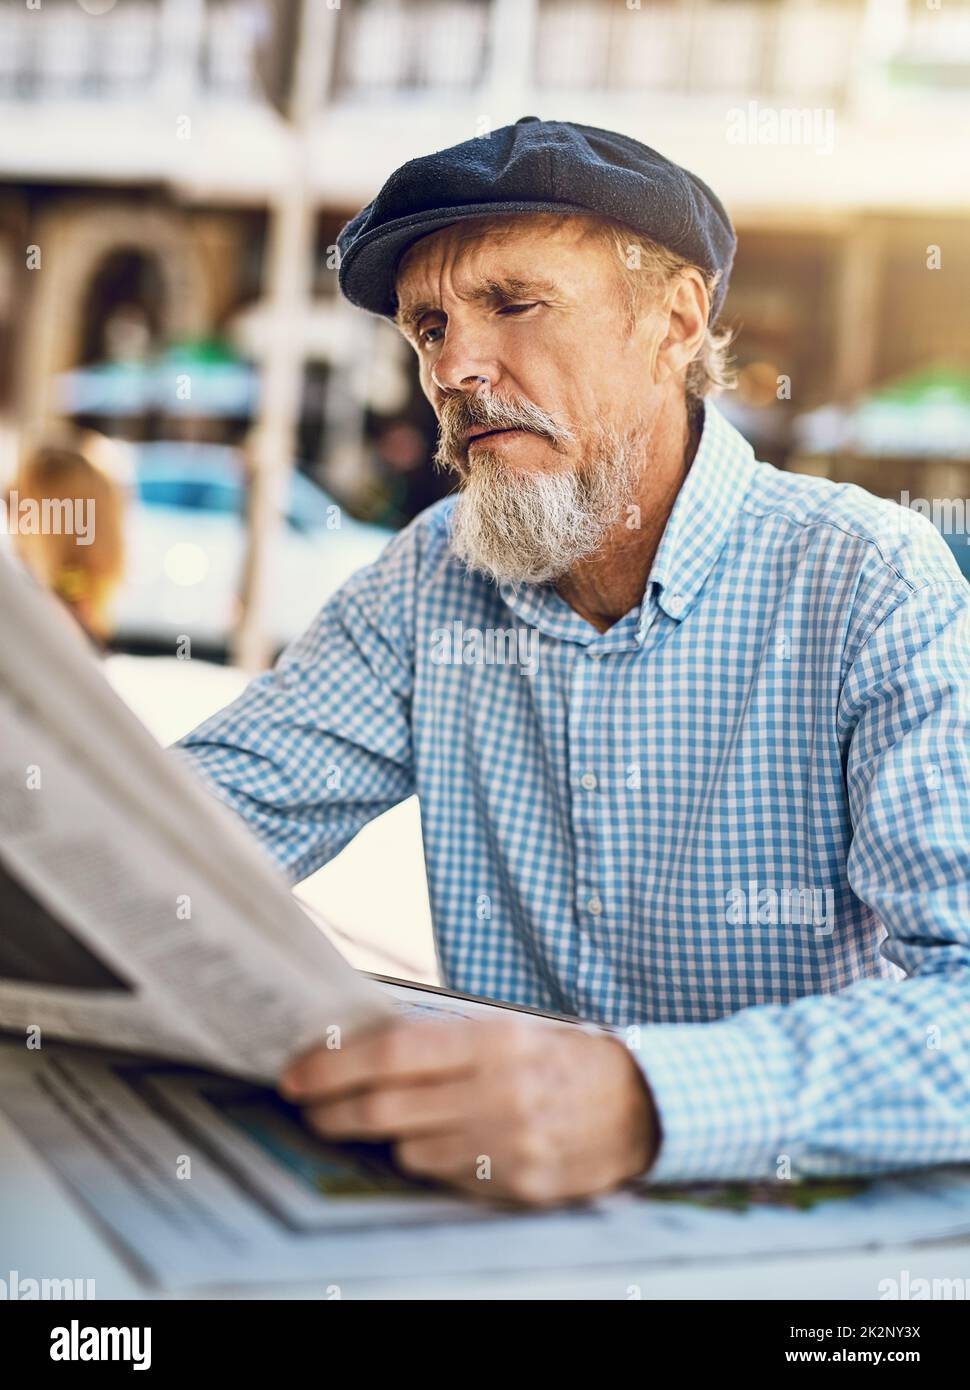 Was heute in der Welt passiert. Aufnahme eines ernsthaften älteren Mannes, der die Zeitung las, während er in einem Straßencafé saß. Stockfoto